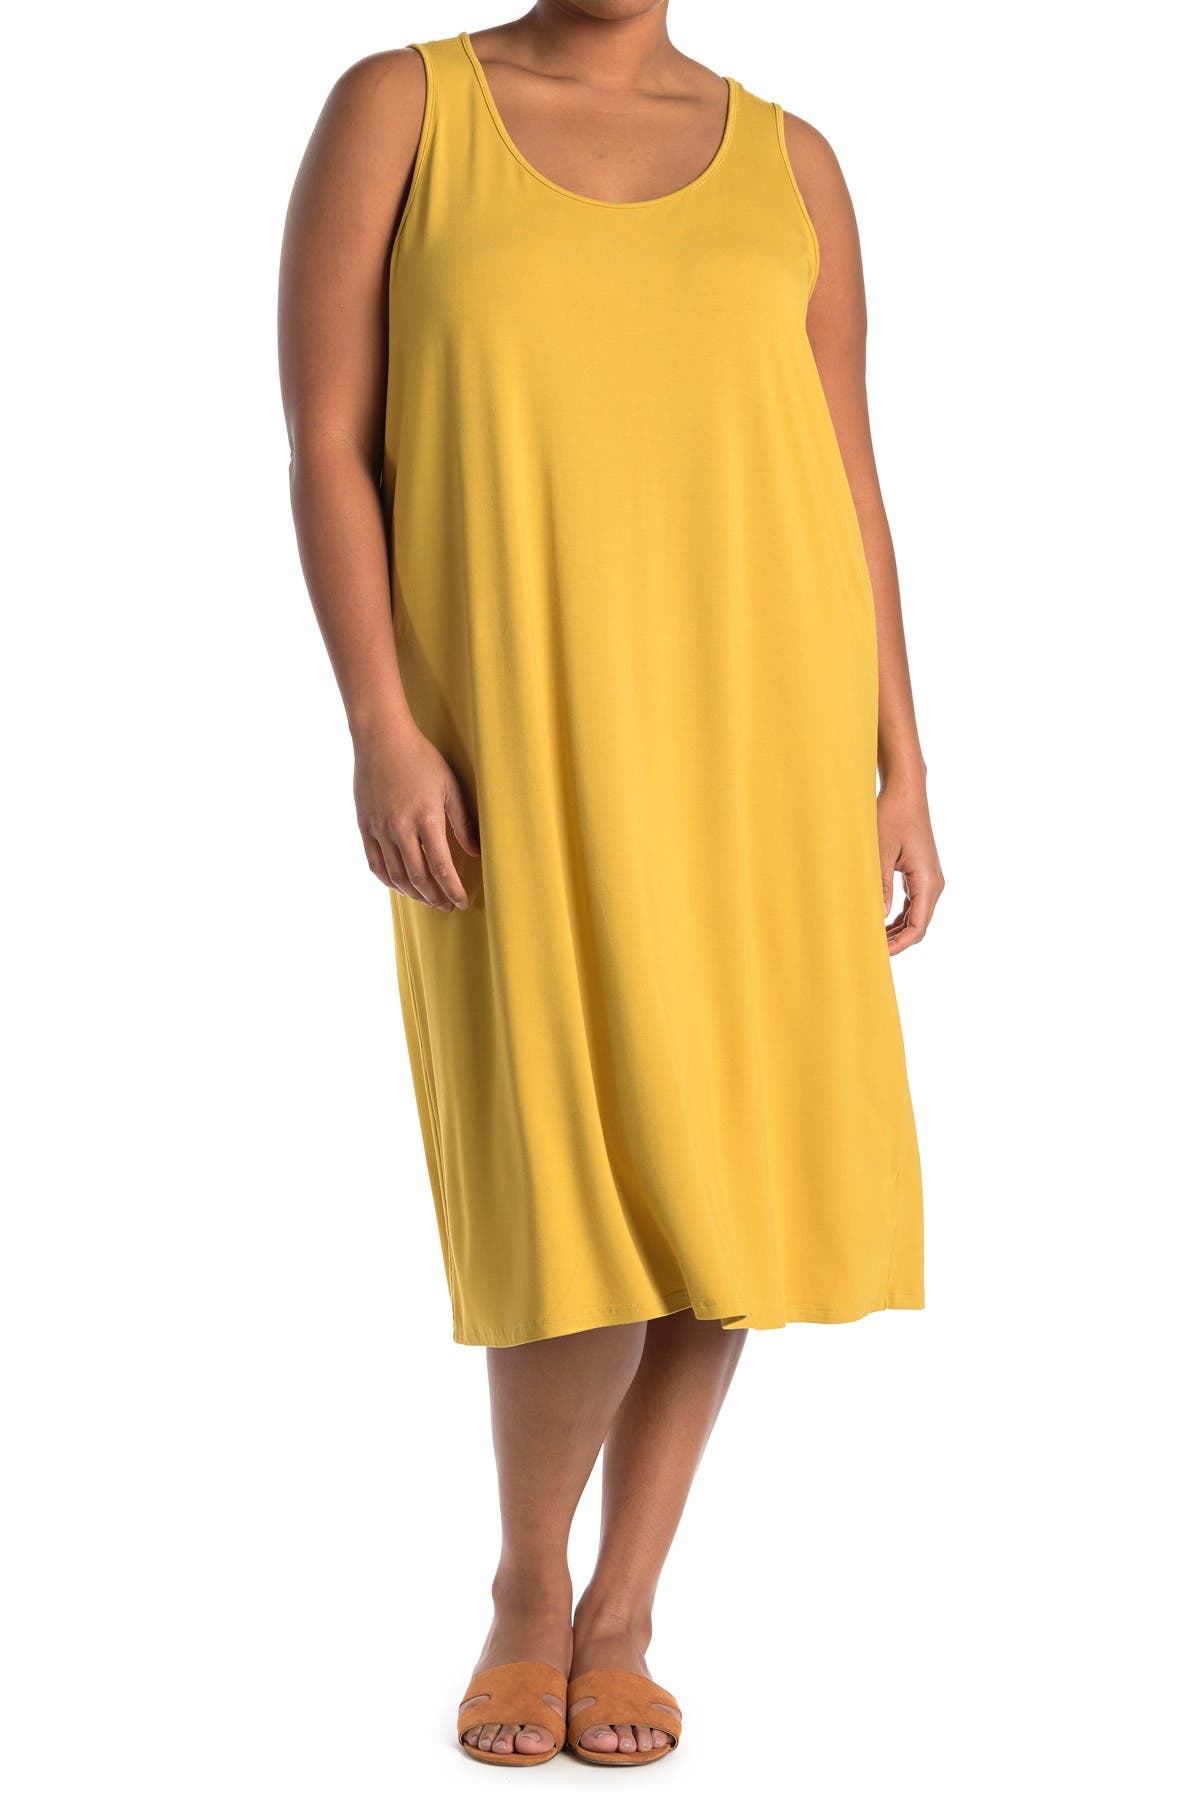 Philosophy Apparel Scoop Neck Midi Knit Tank Dress In Open Yellow45